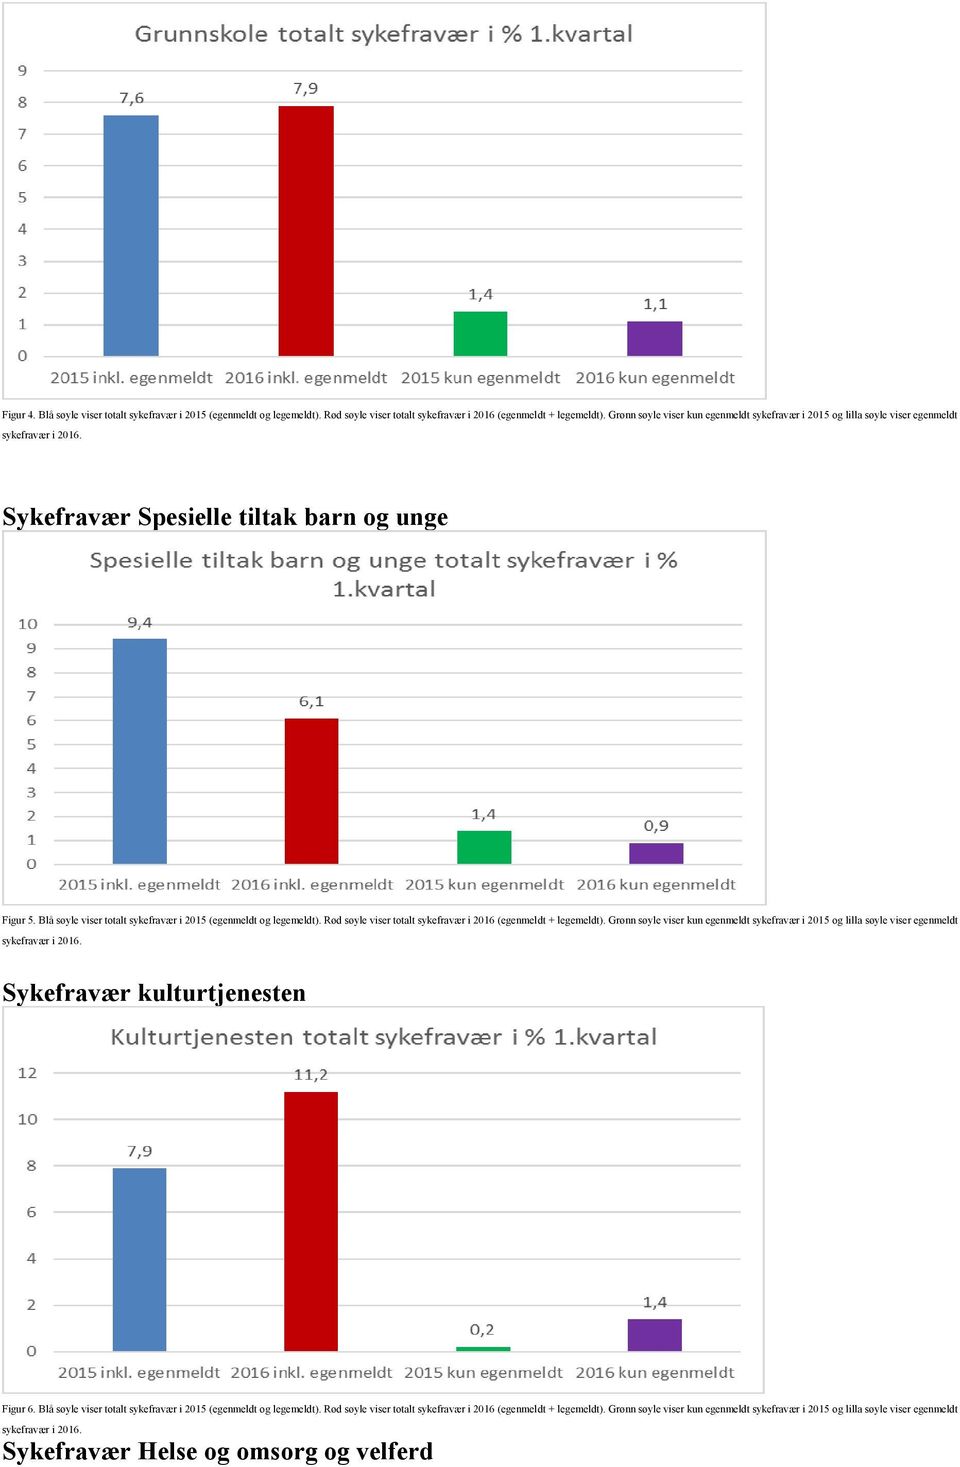 Blå søyle viser totalt sykefravær i 2015 (egenmeldt og legemeldt). Rød søyle viser totalt sykefravær i 2016 (egenmeldt + legemeldt).